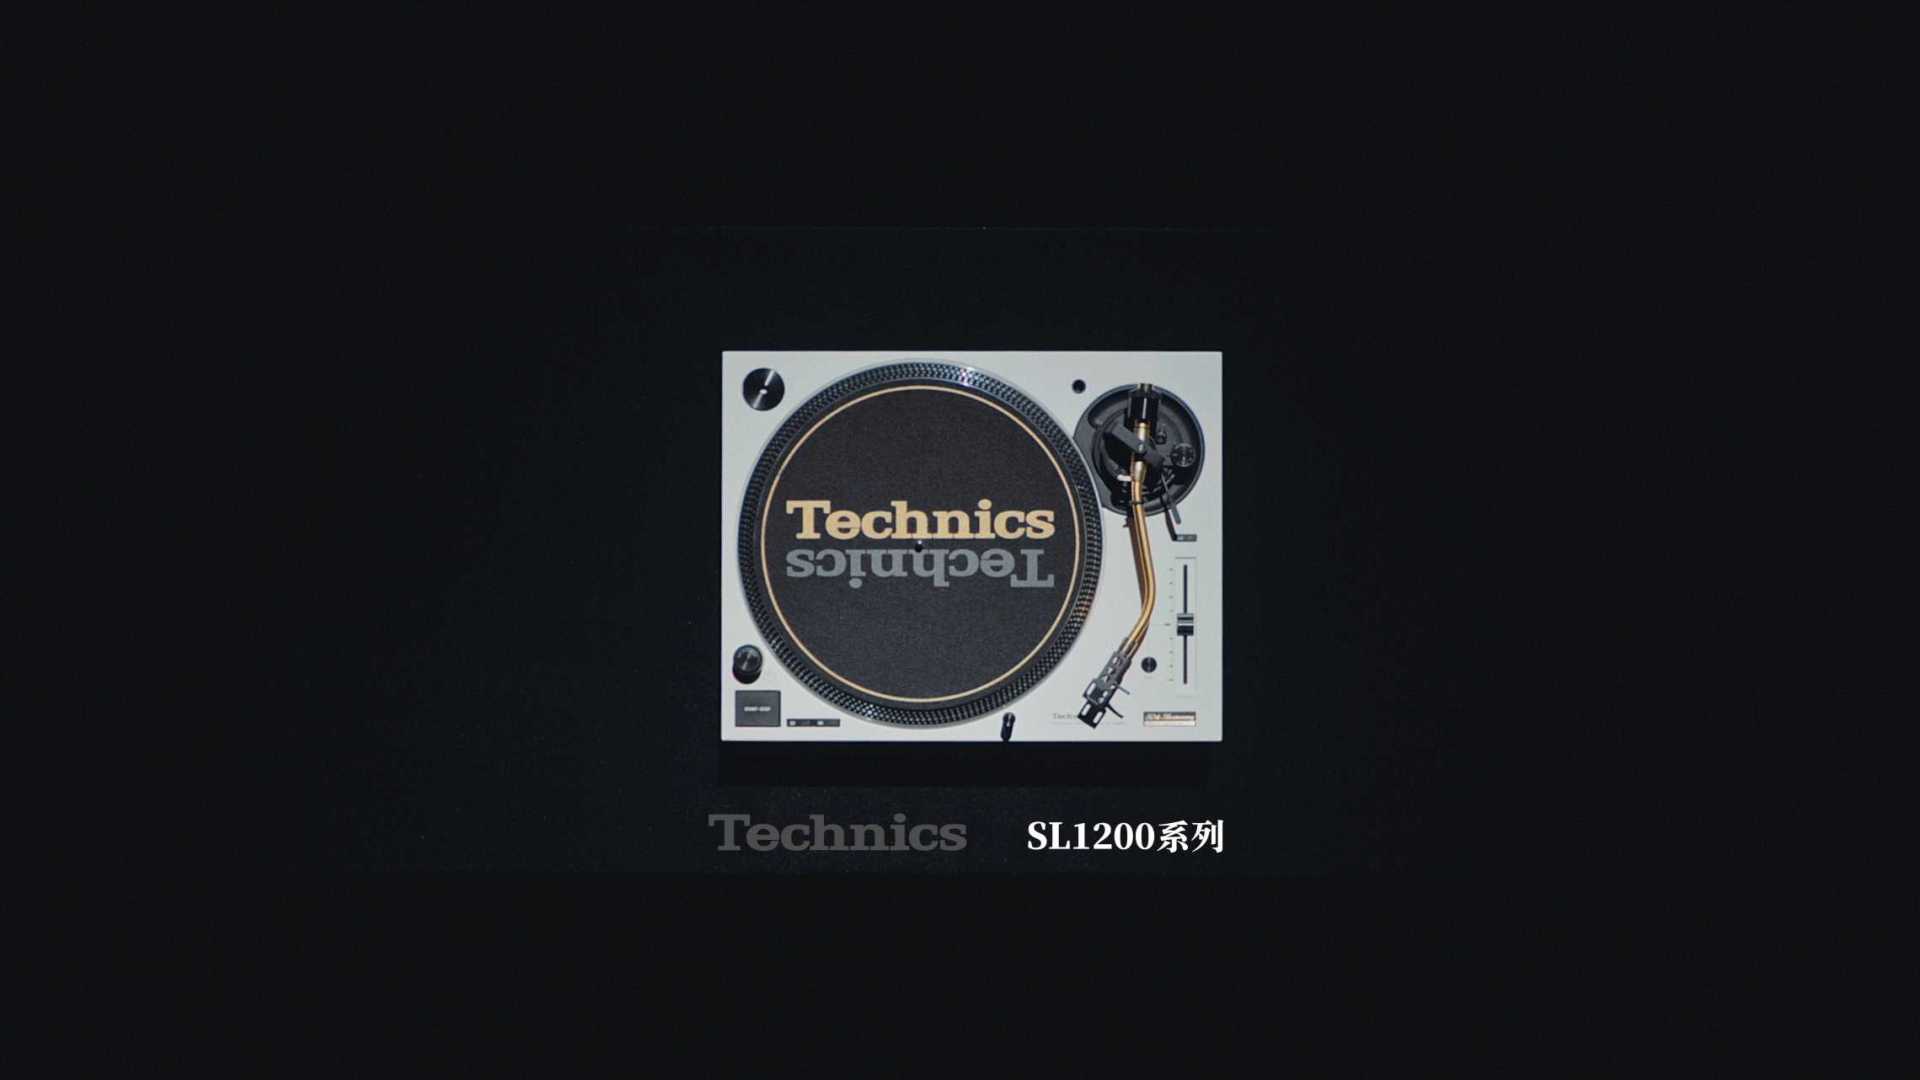 松下Technics唱片机中国发布广告